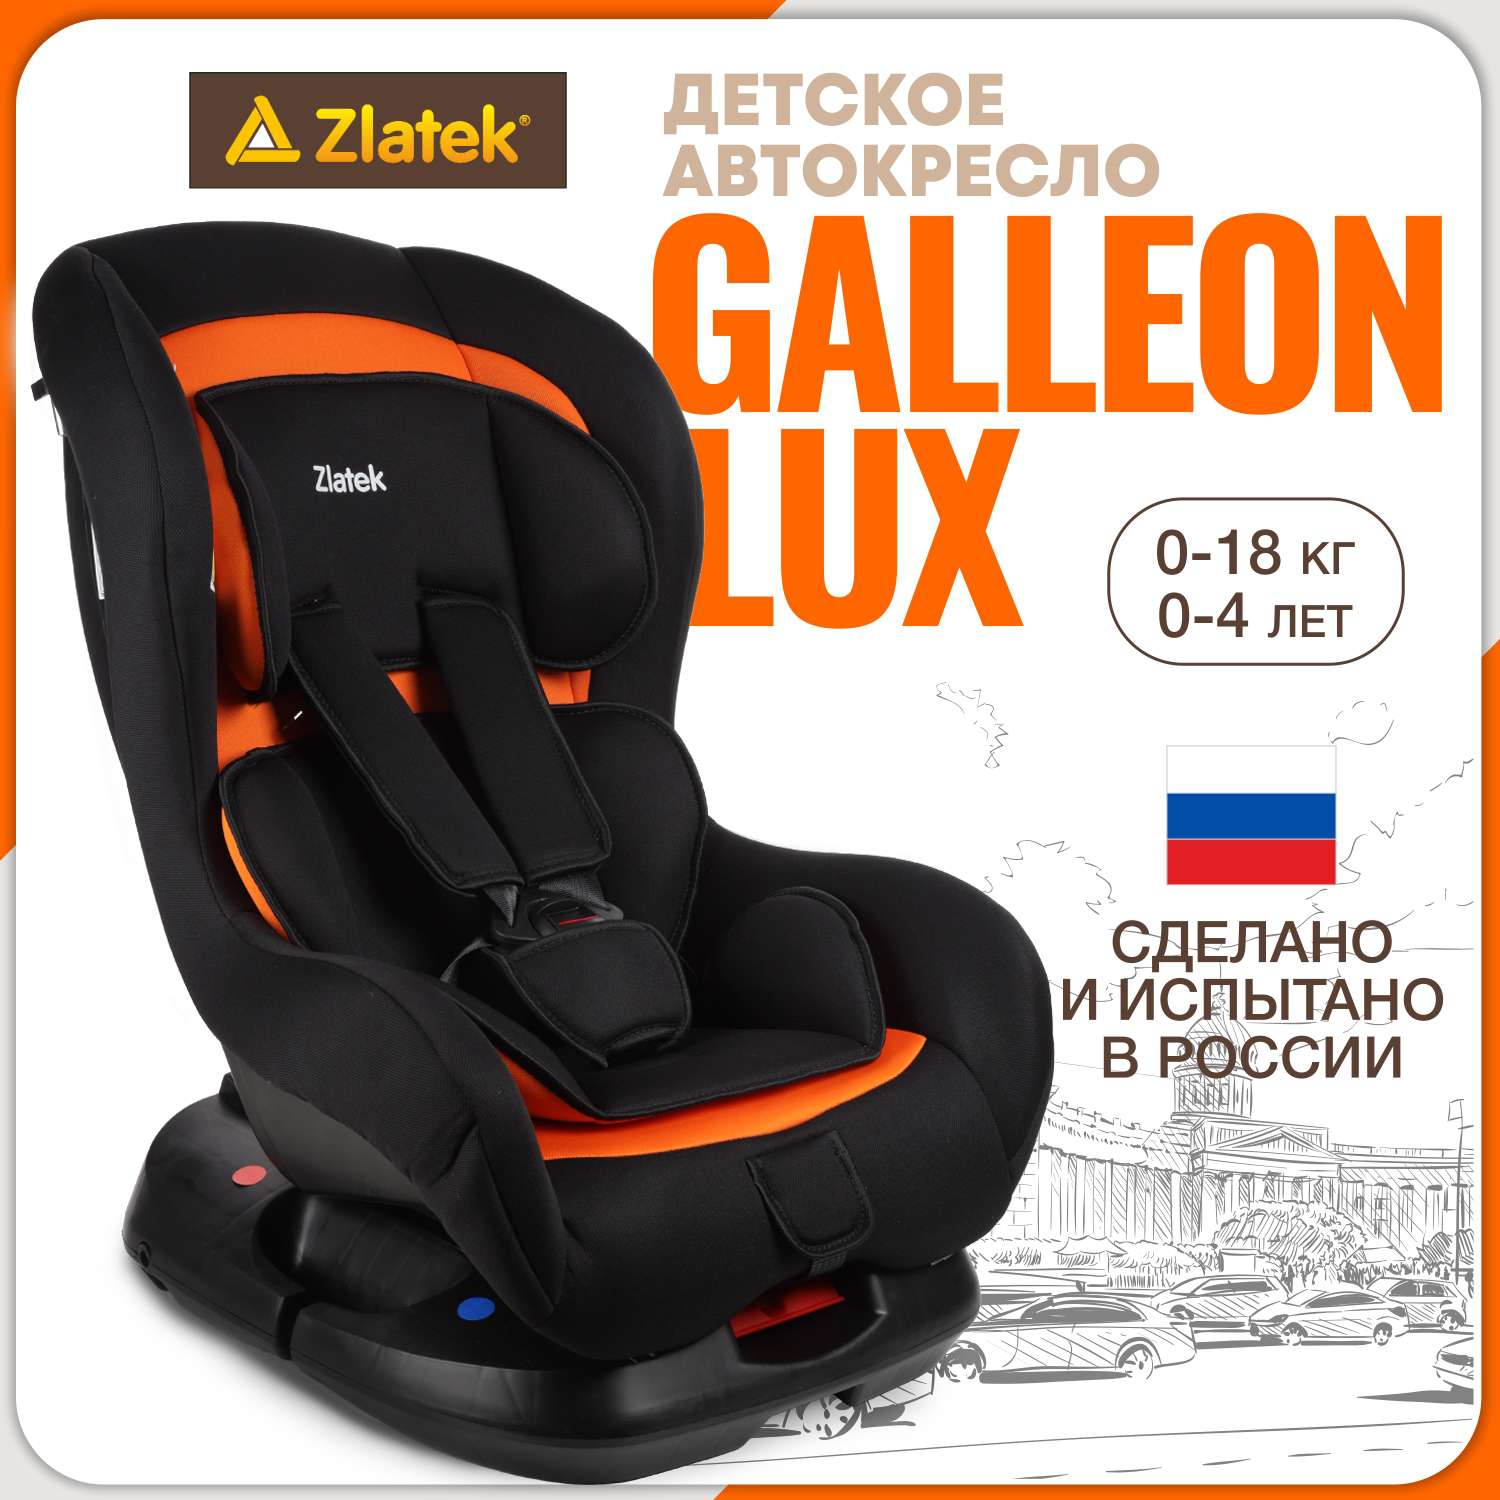 Детское автокресло ZLATEK Galleon Lux оранжевый закат - фото 1